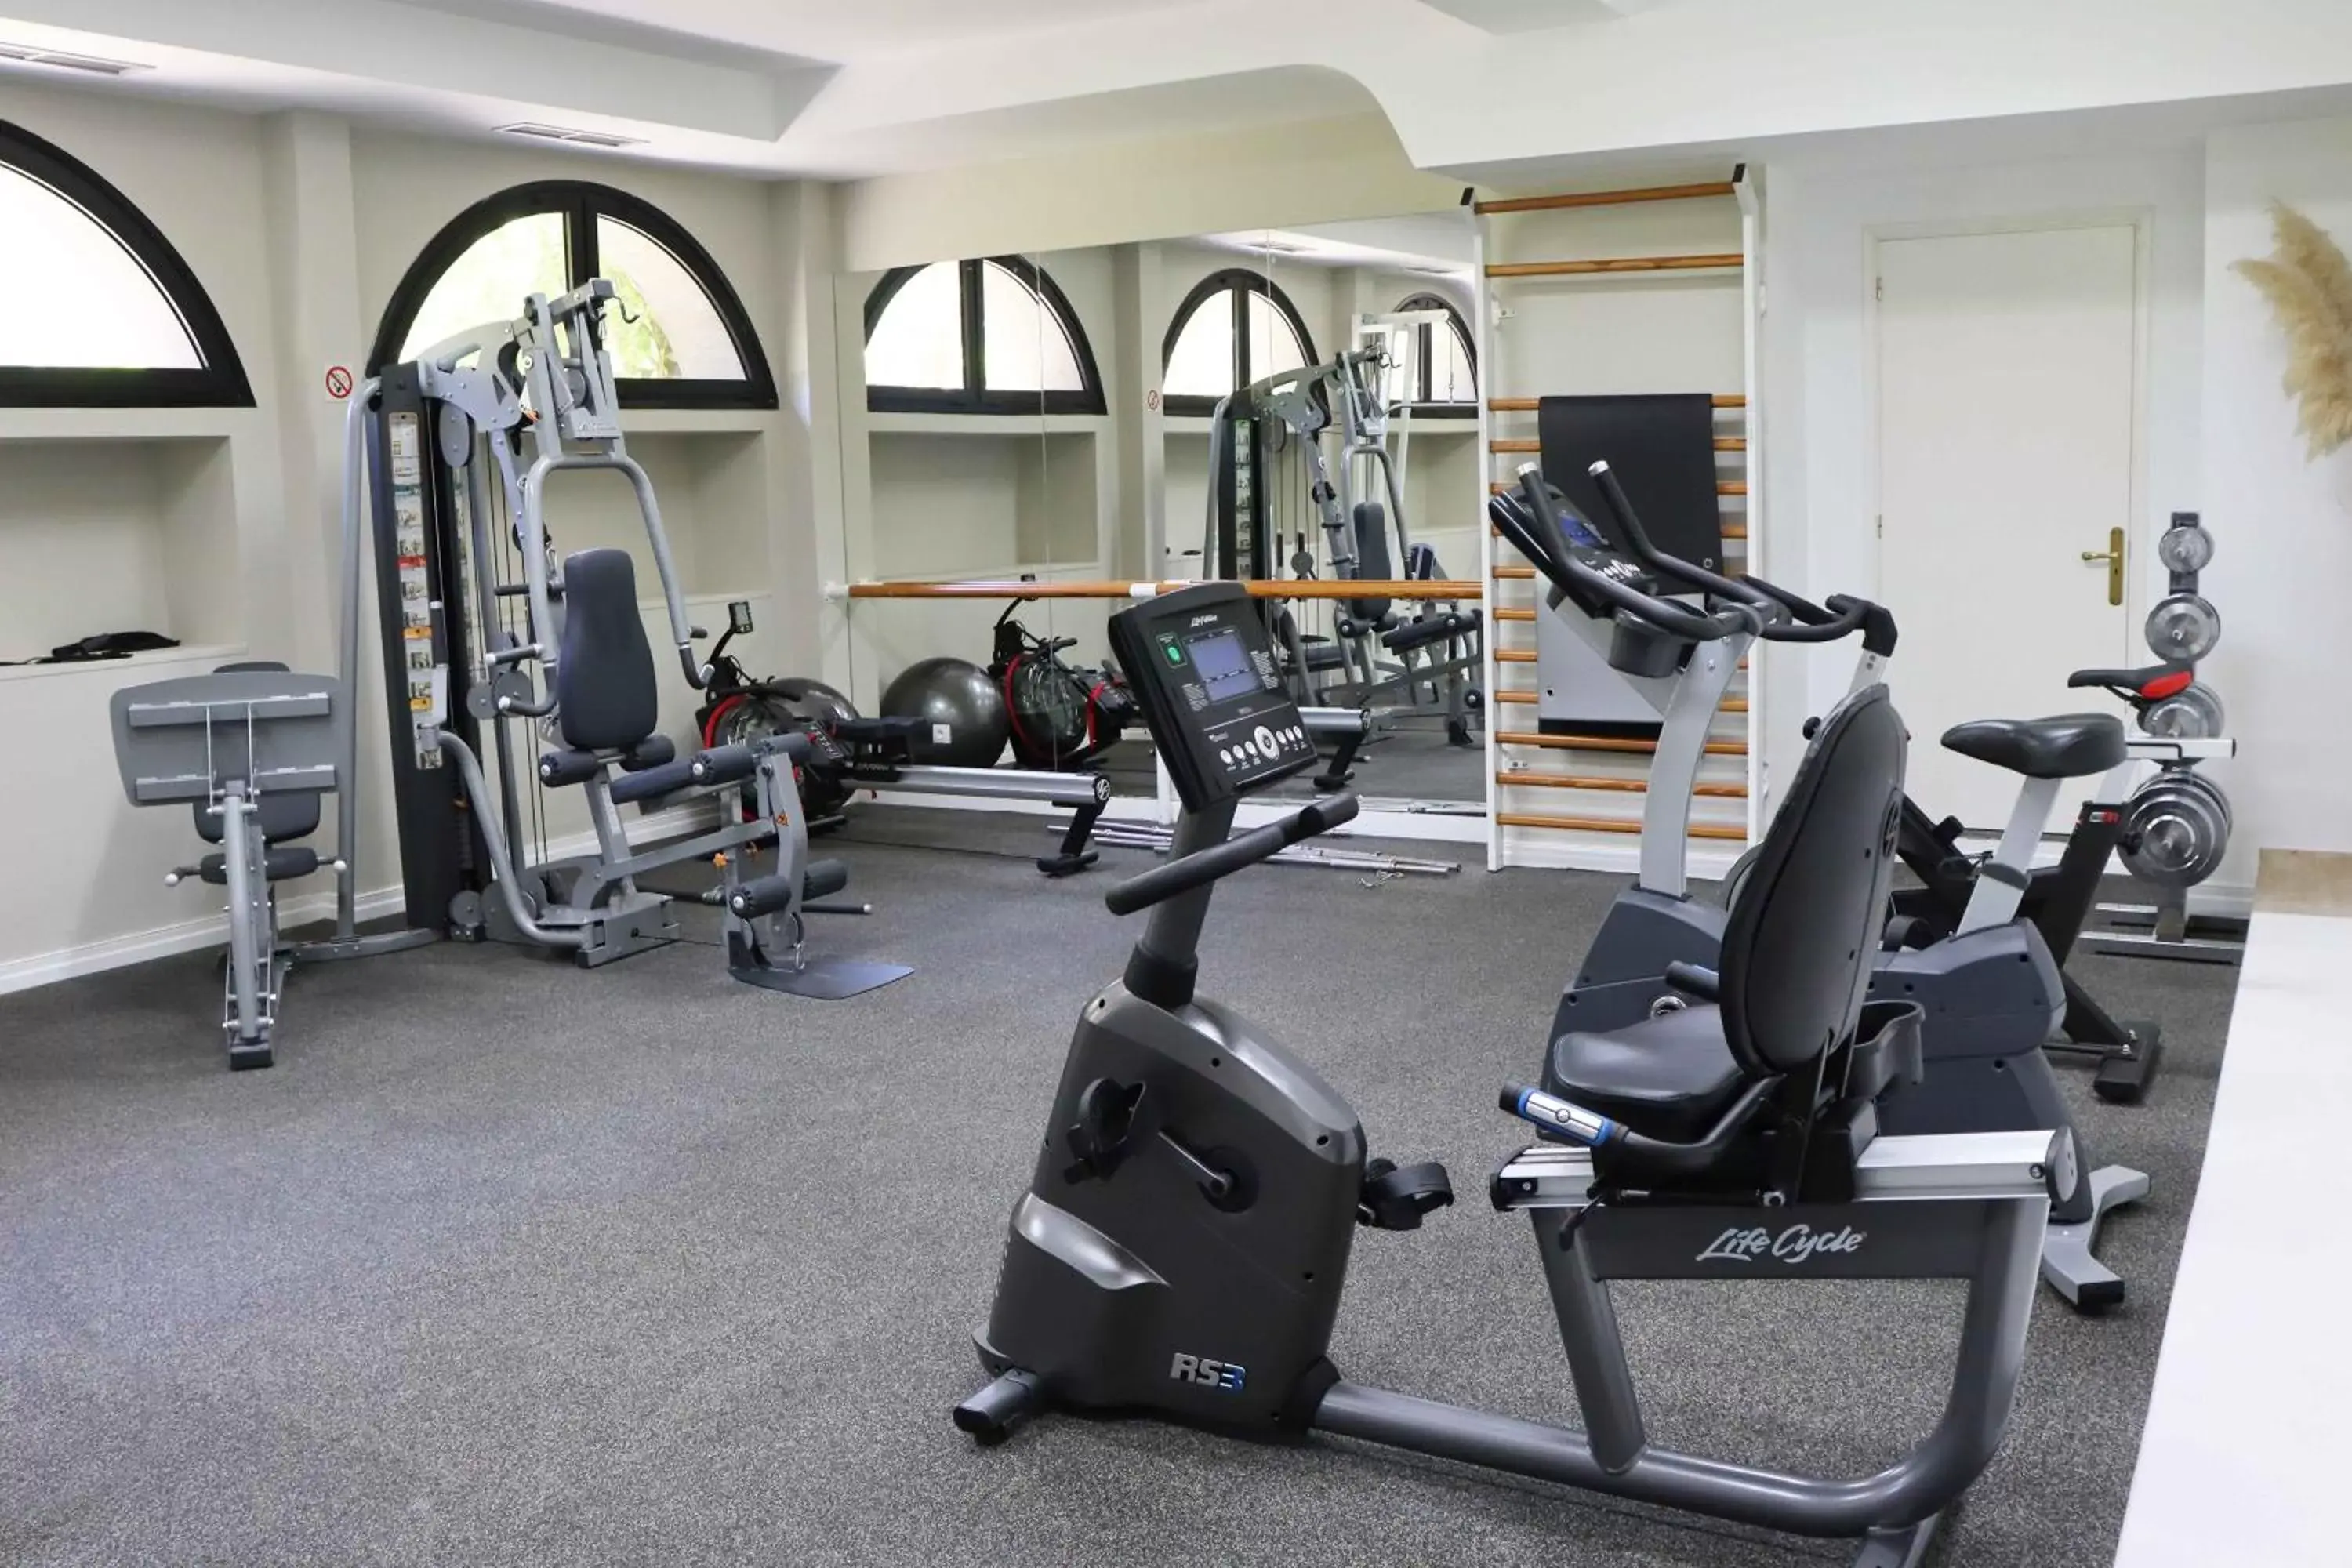 Fitness centre/facilities, Fitness Center/Facilities in Hotel Escuela Santa Brígida